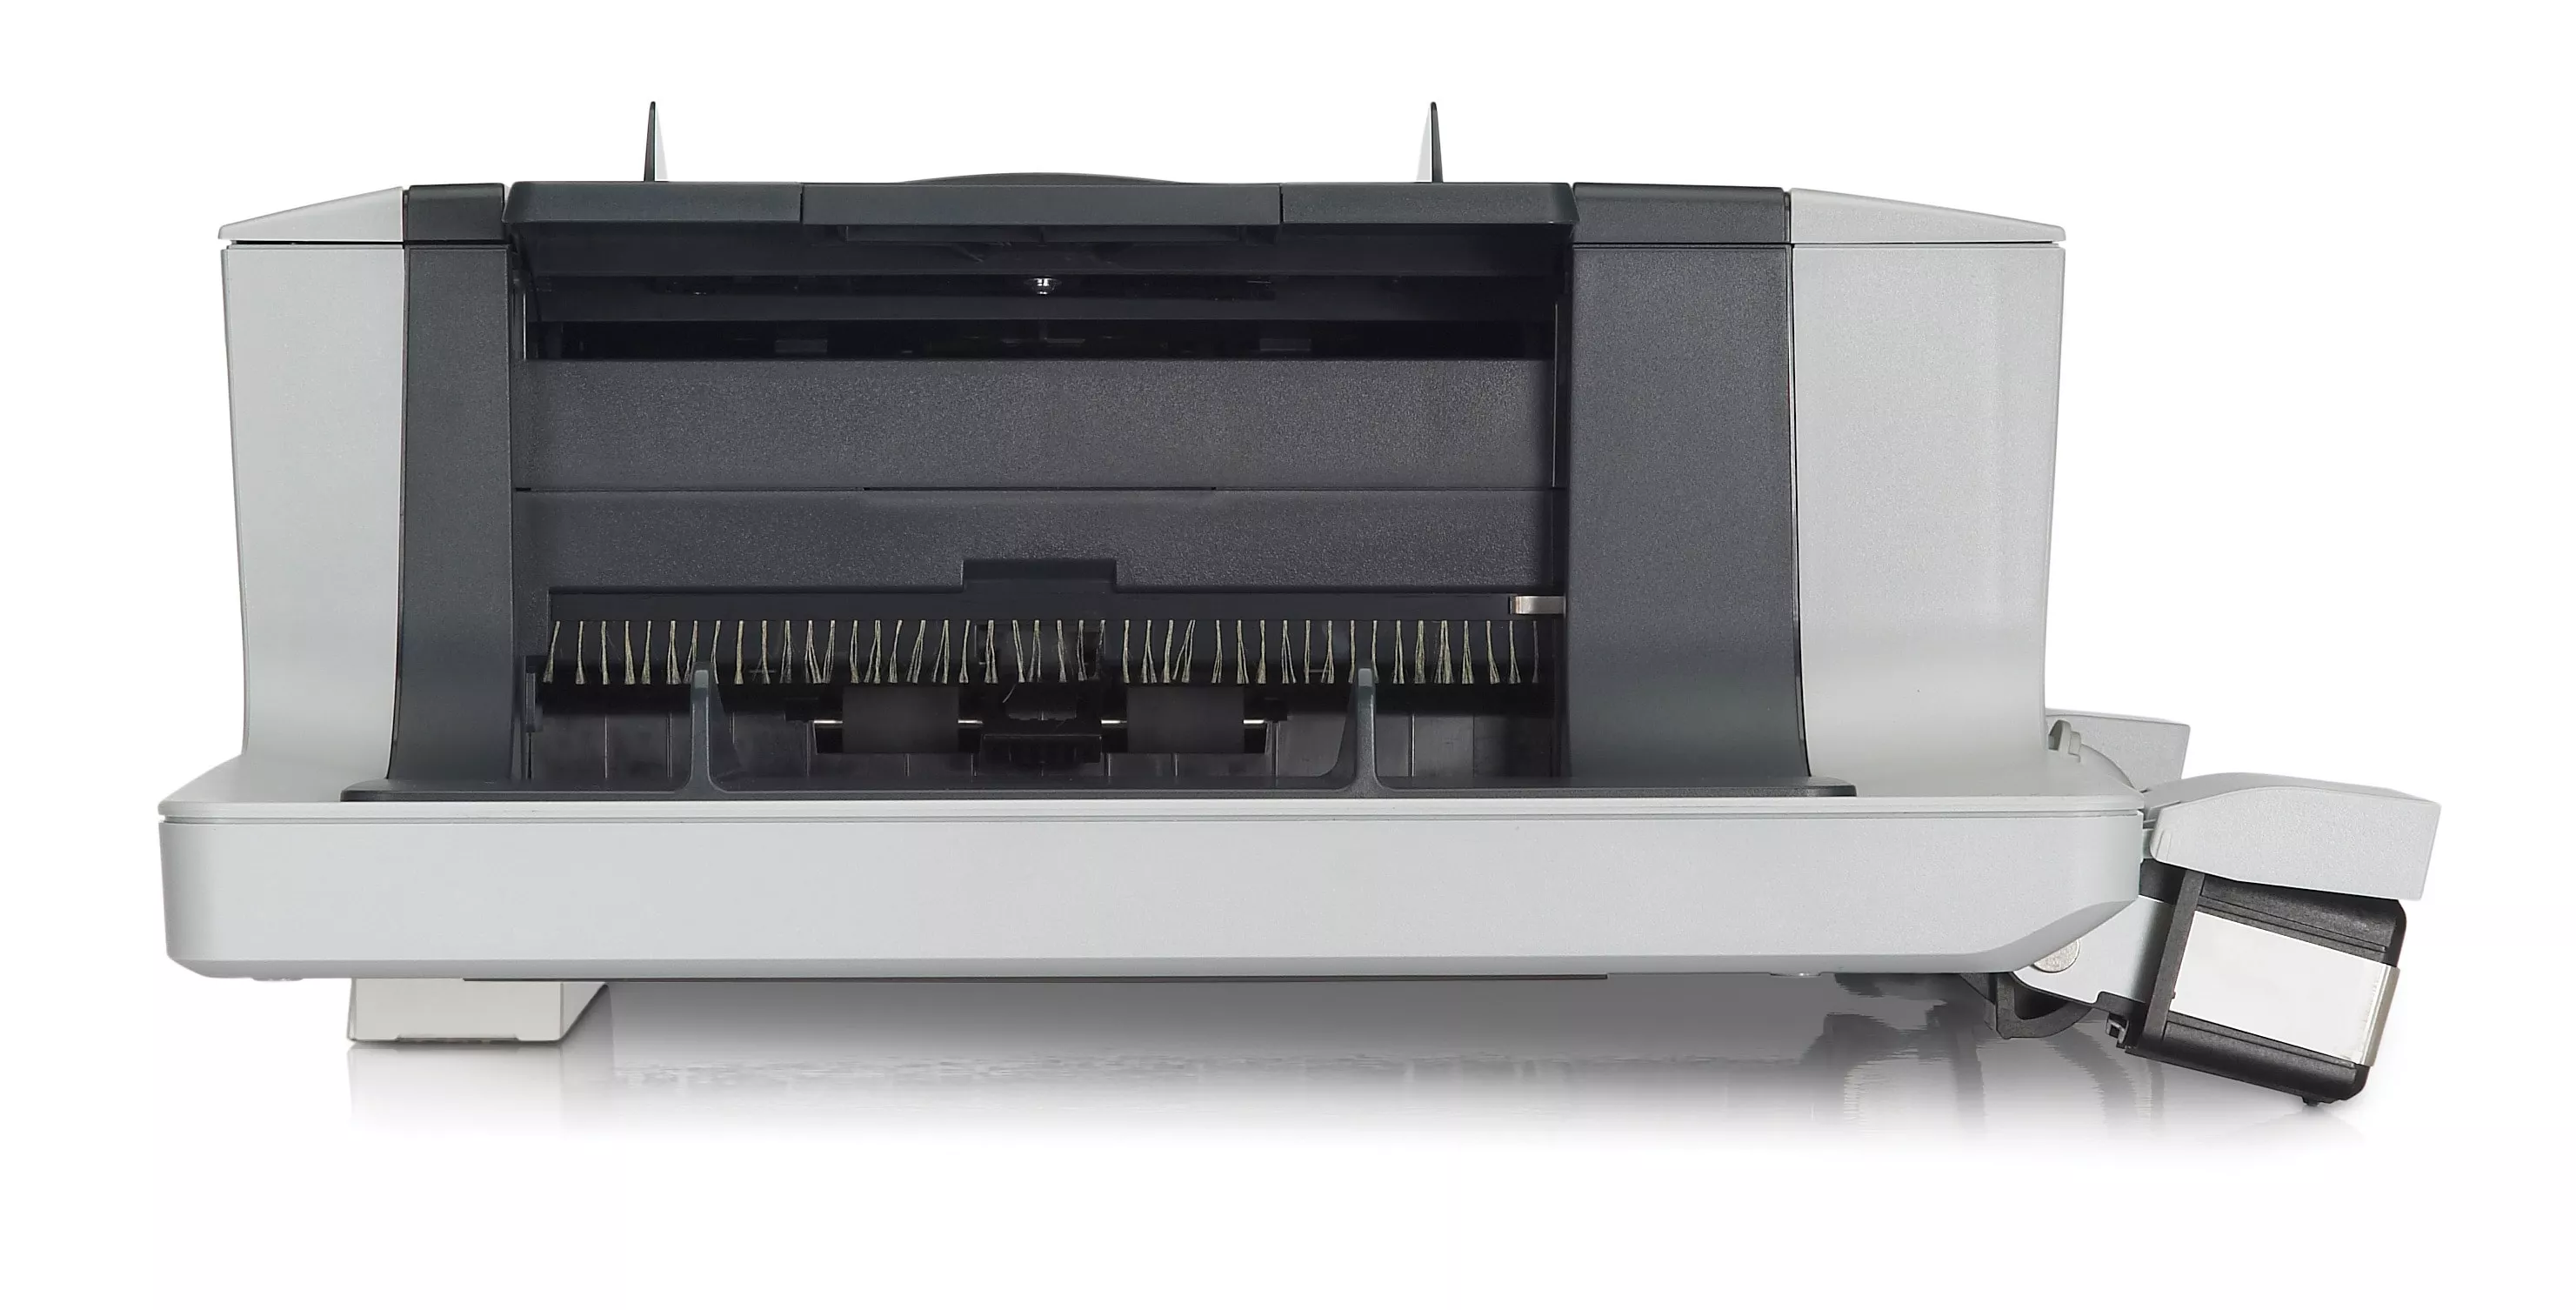 Achat Accessoires pour imprimante Chargeur automatique de documents HP Scanjet